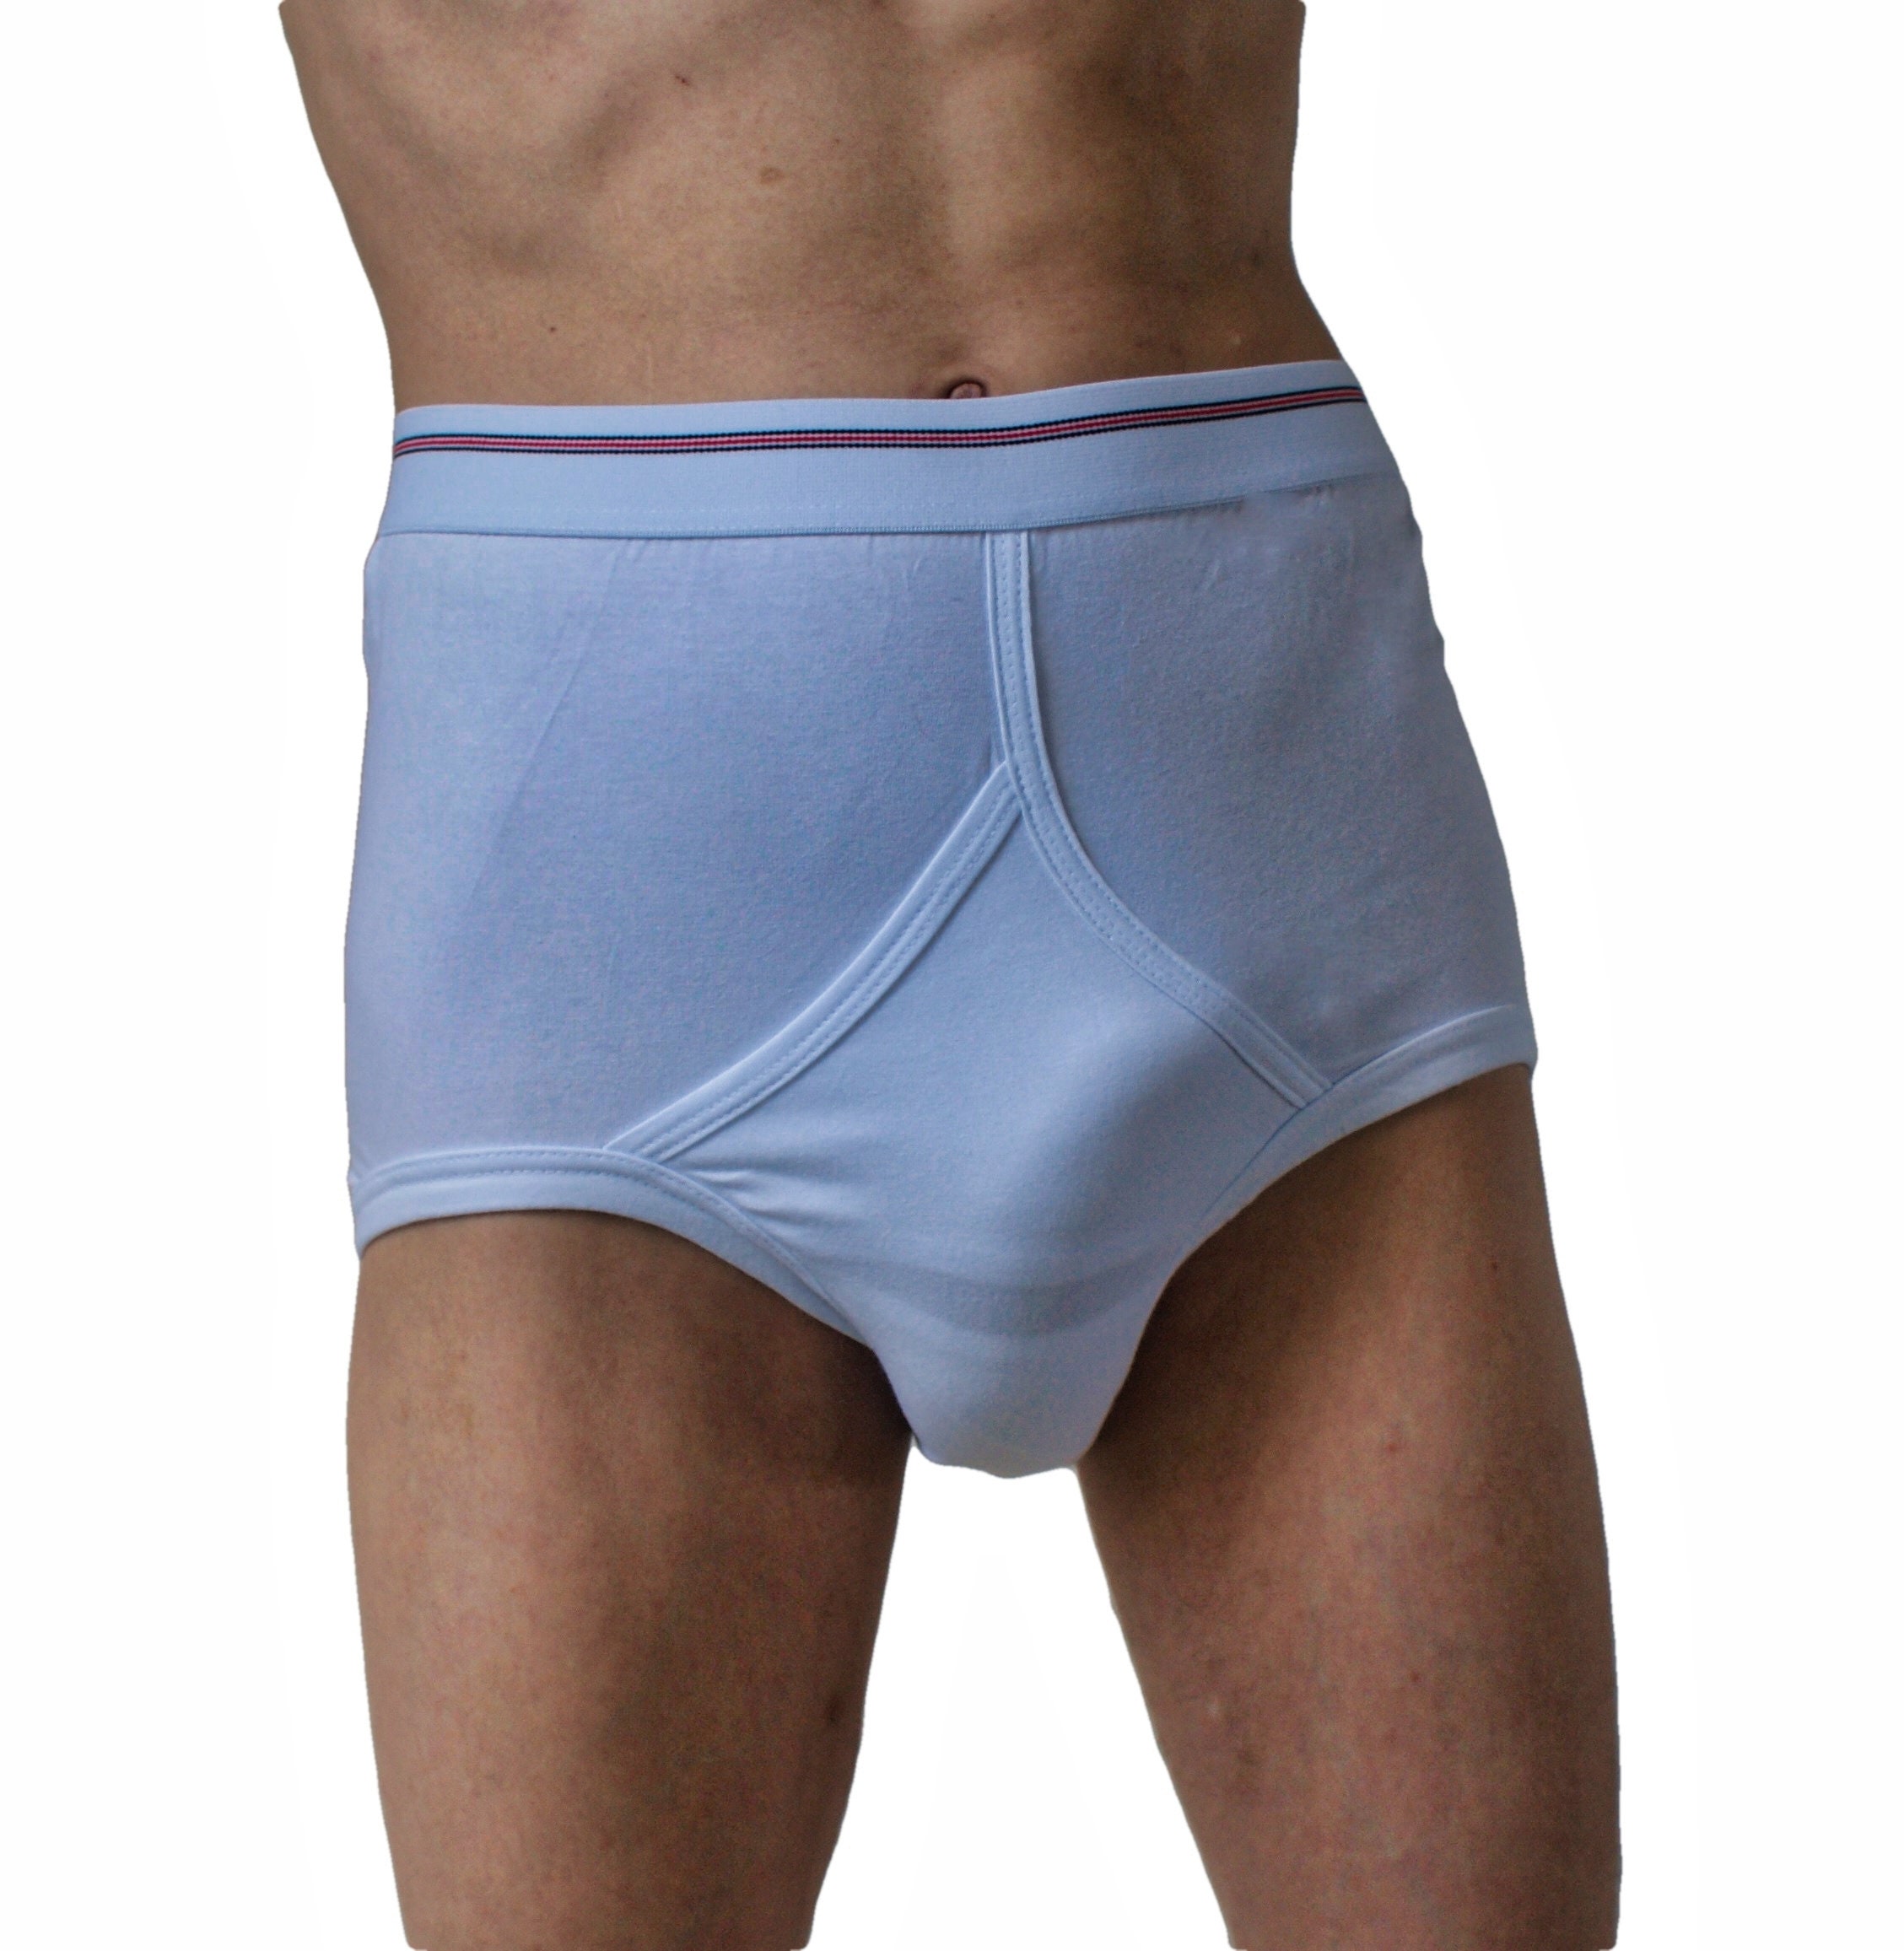 Aanmoediging Allerlei soorten Hij Classic String Y Fronts Briefs Underwear Underpants With - Etsy